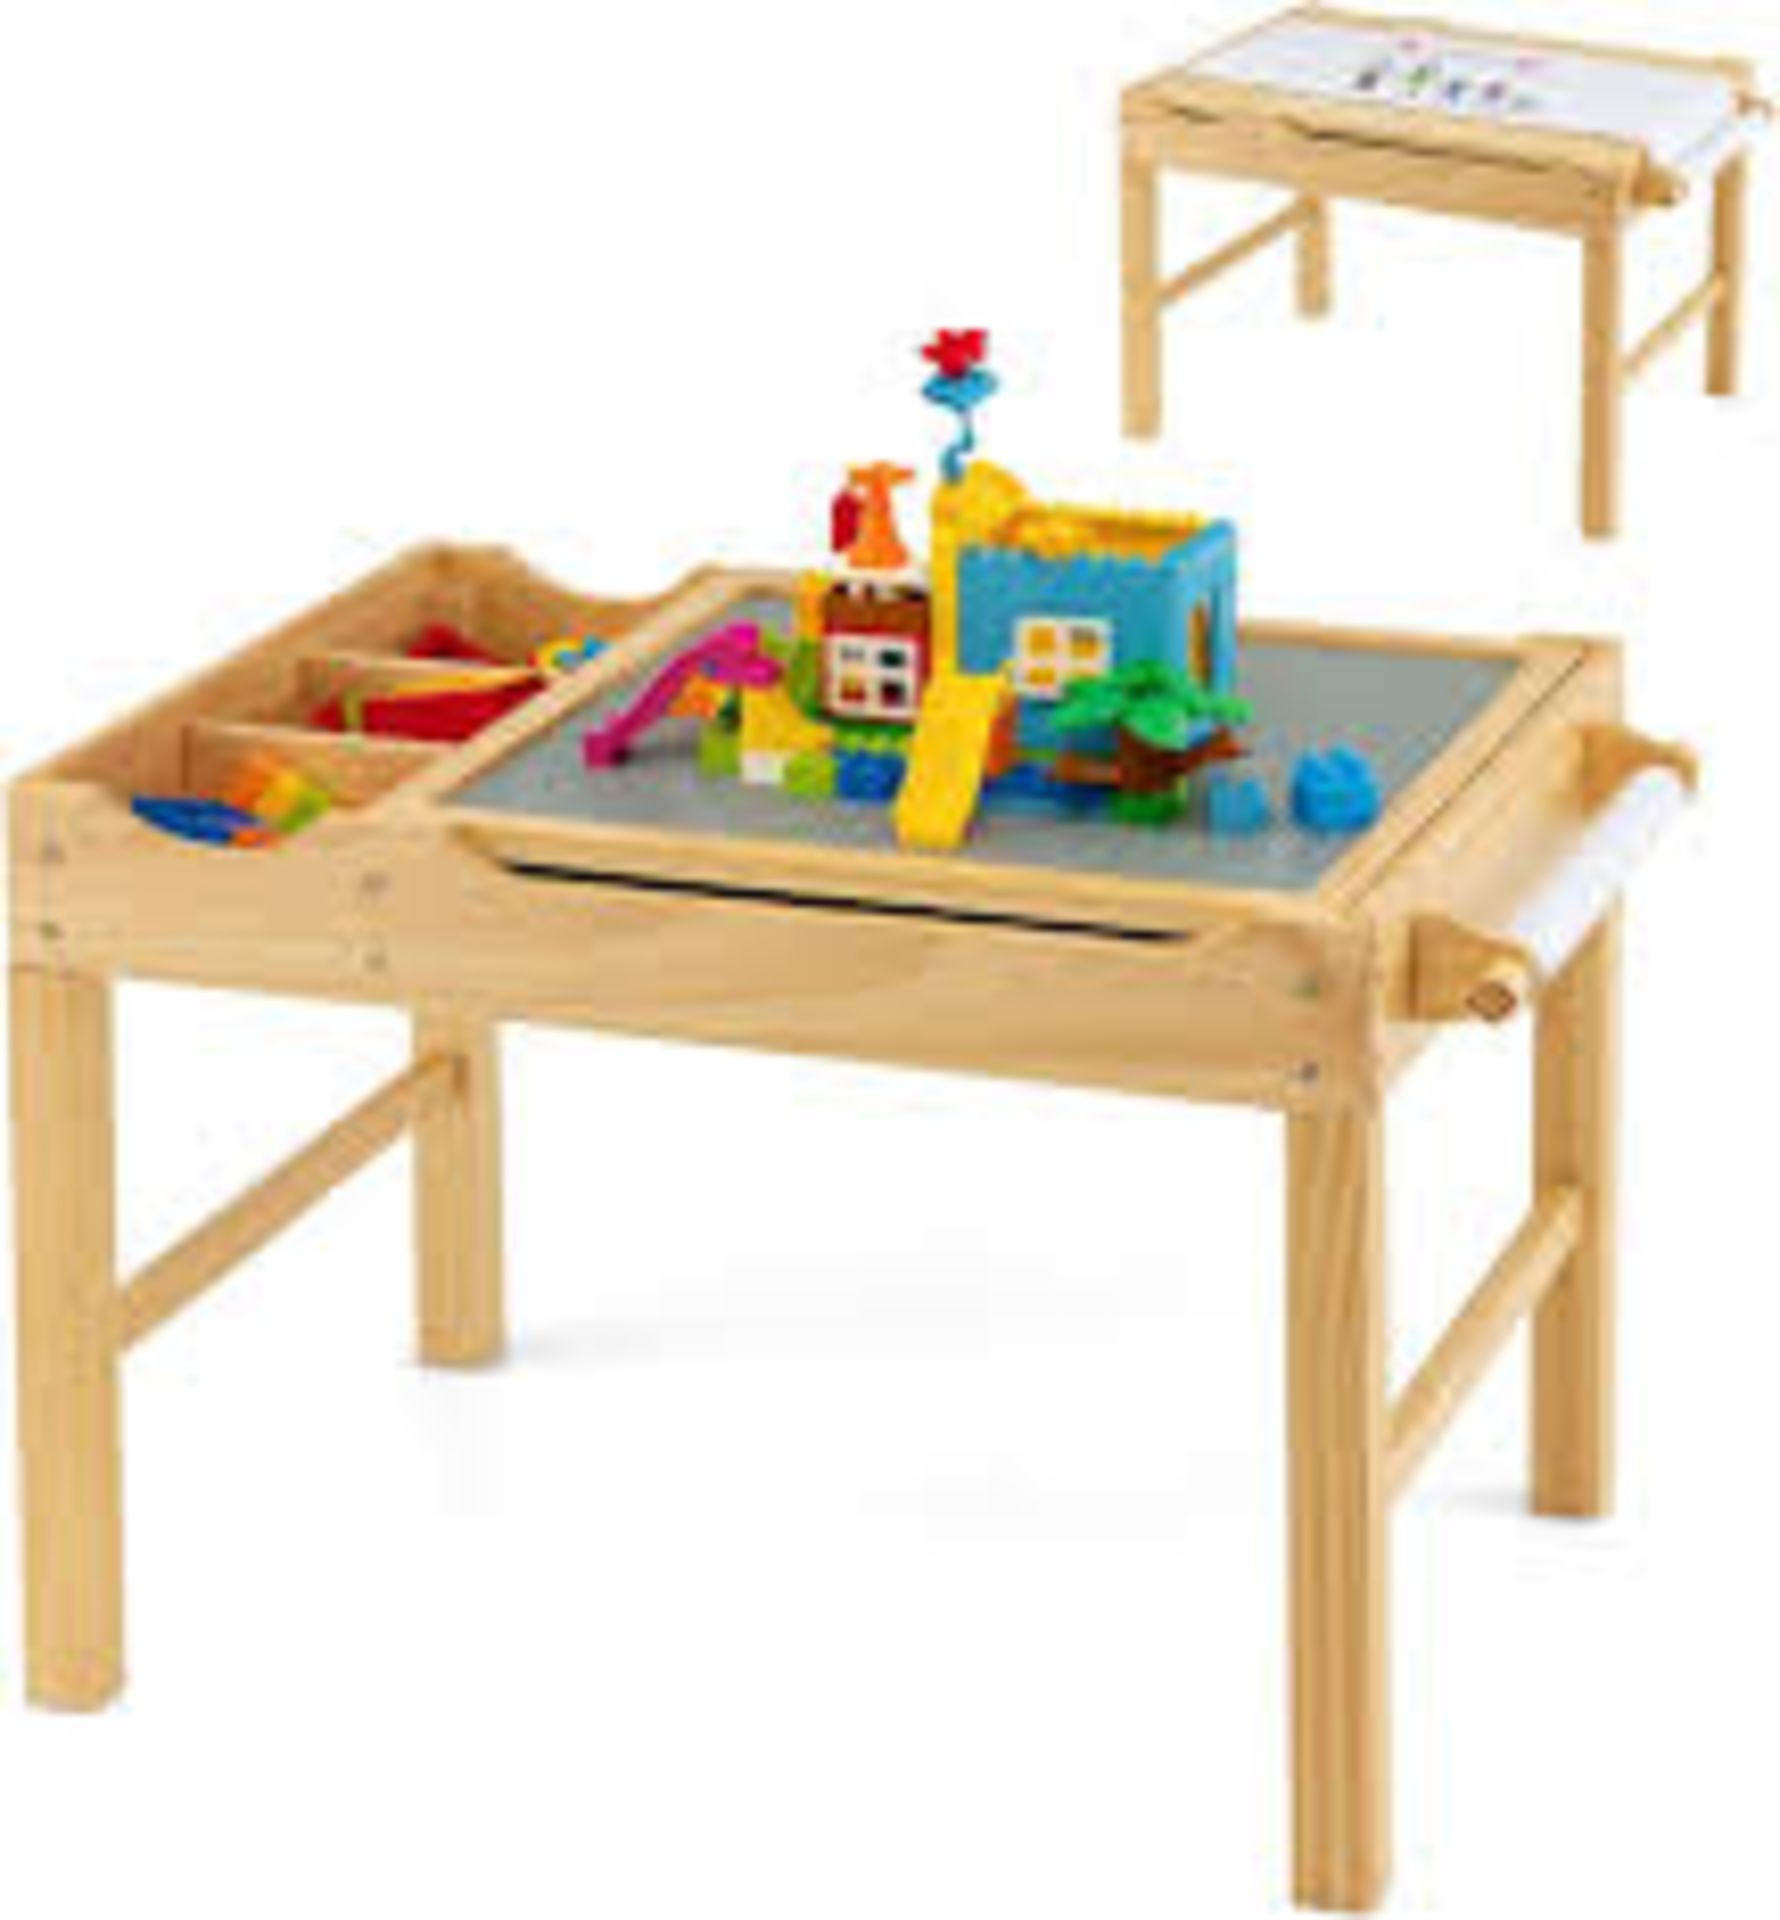 COSTWAY 2-in-1 Kids Activity Table, Wooden Children Building Block. - R14.15.